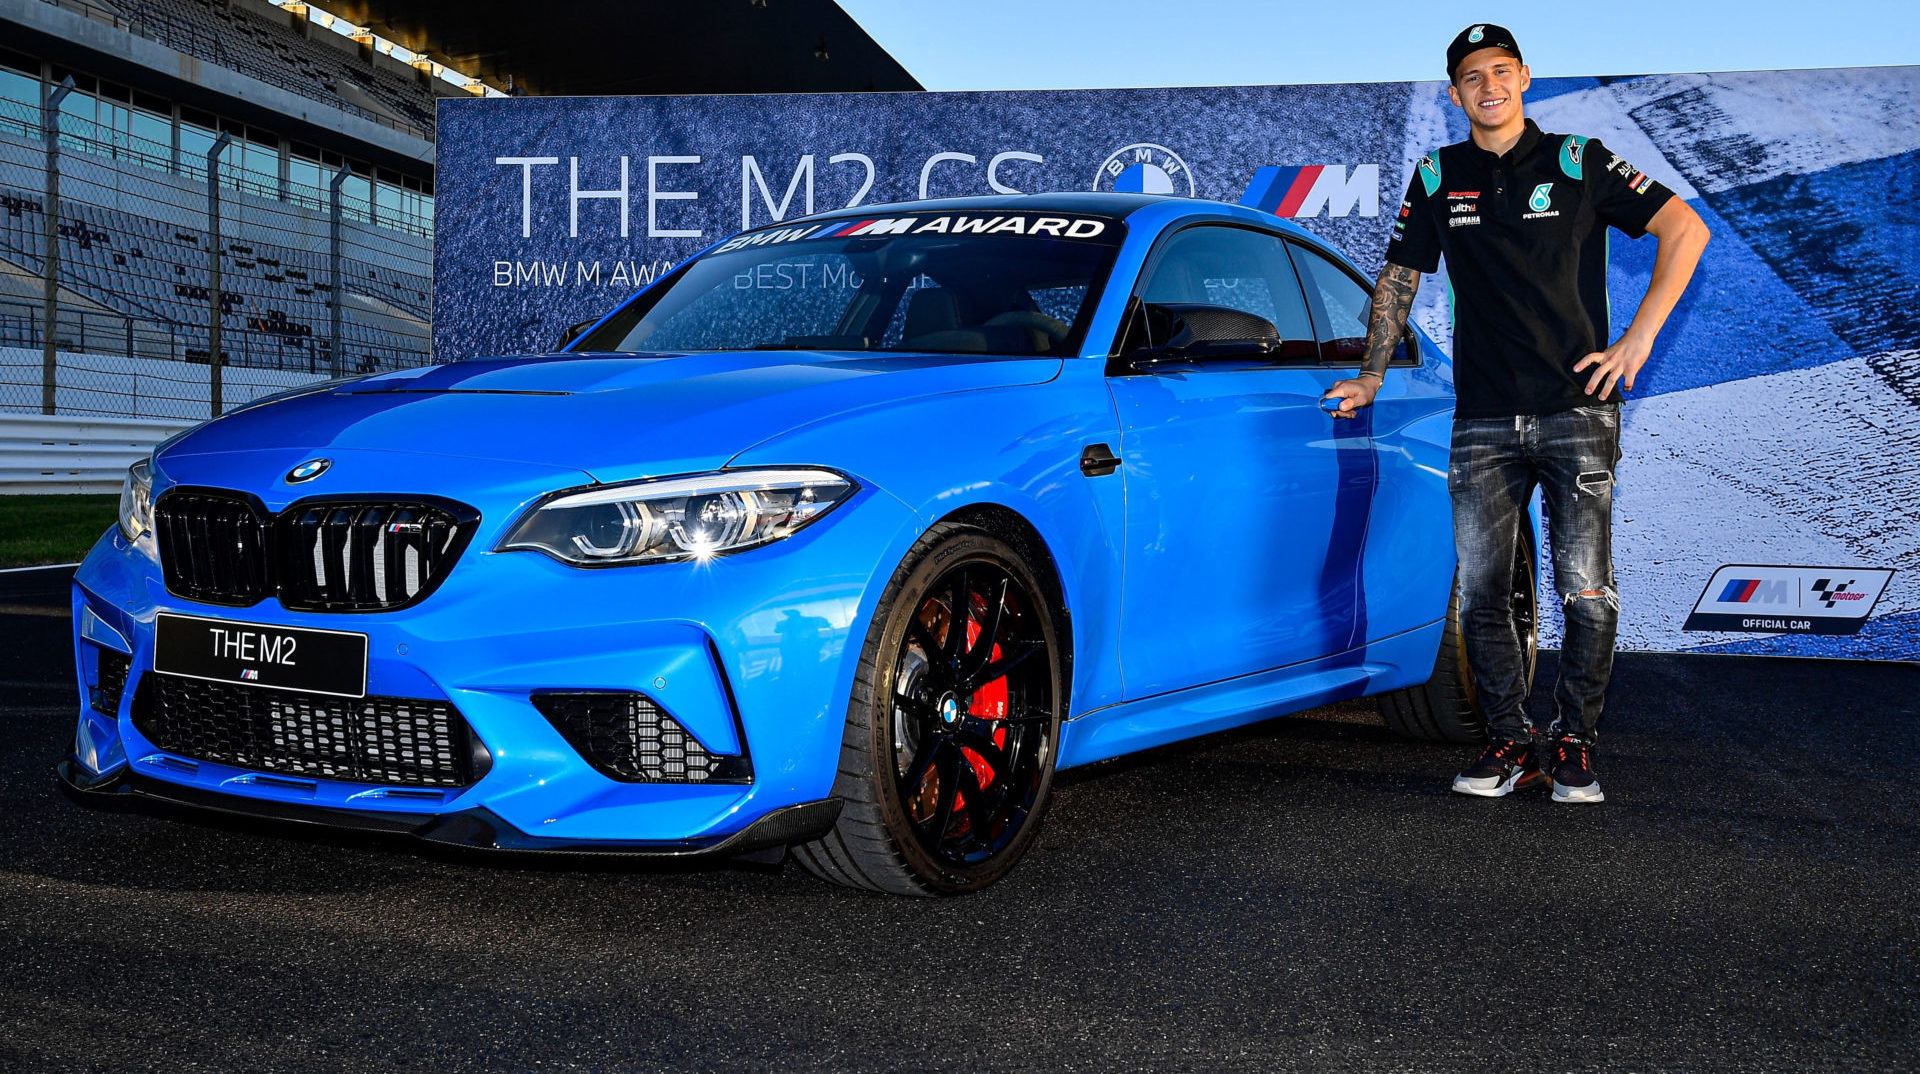 Fabio Quartararo Wins BMW M Qualifying Award